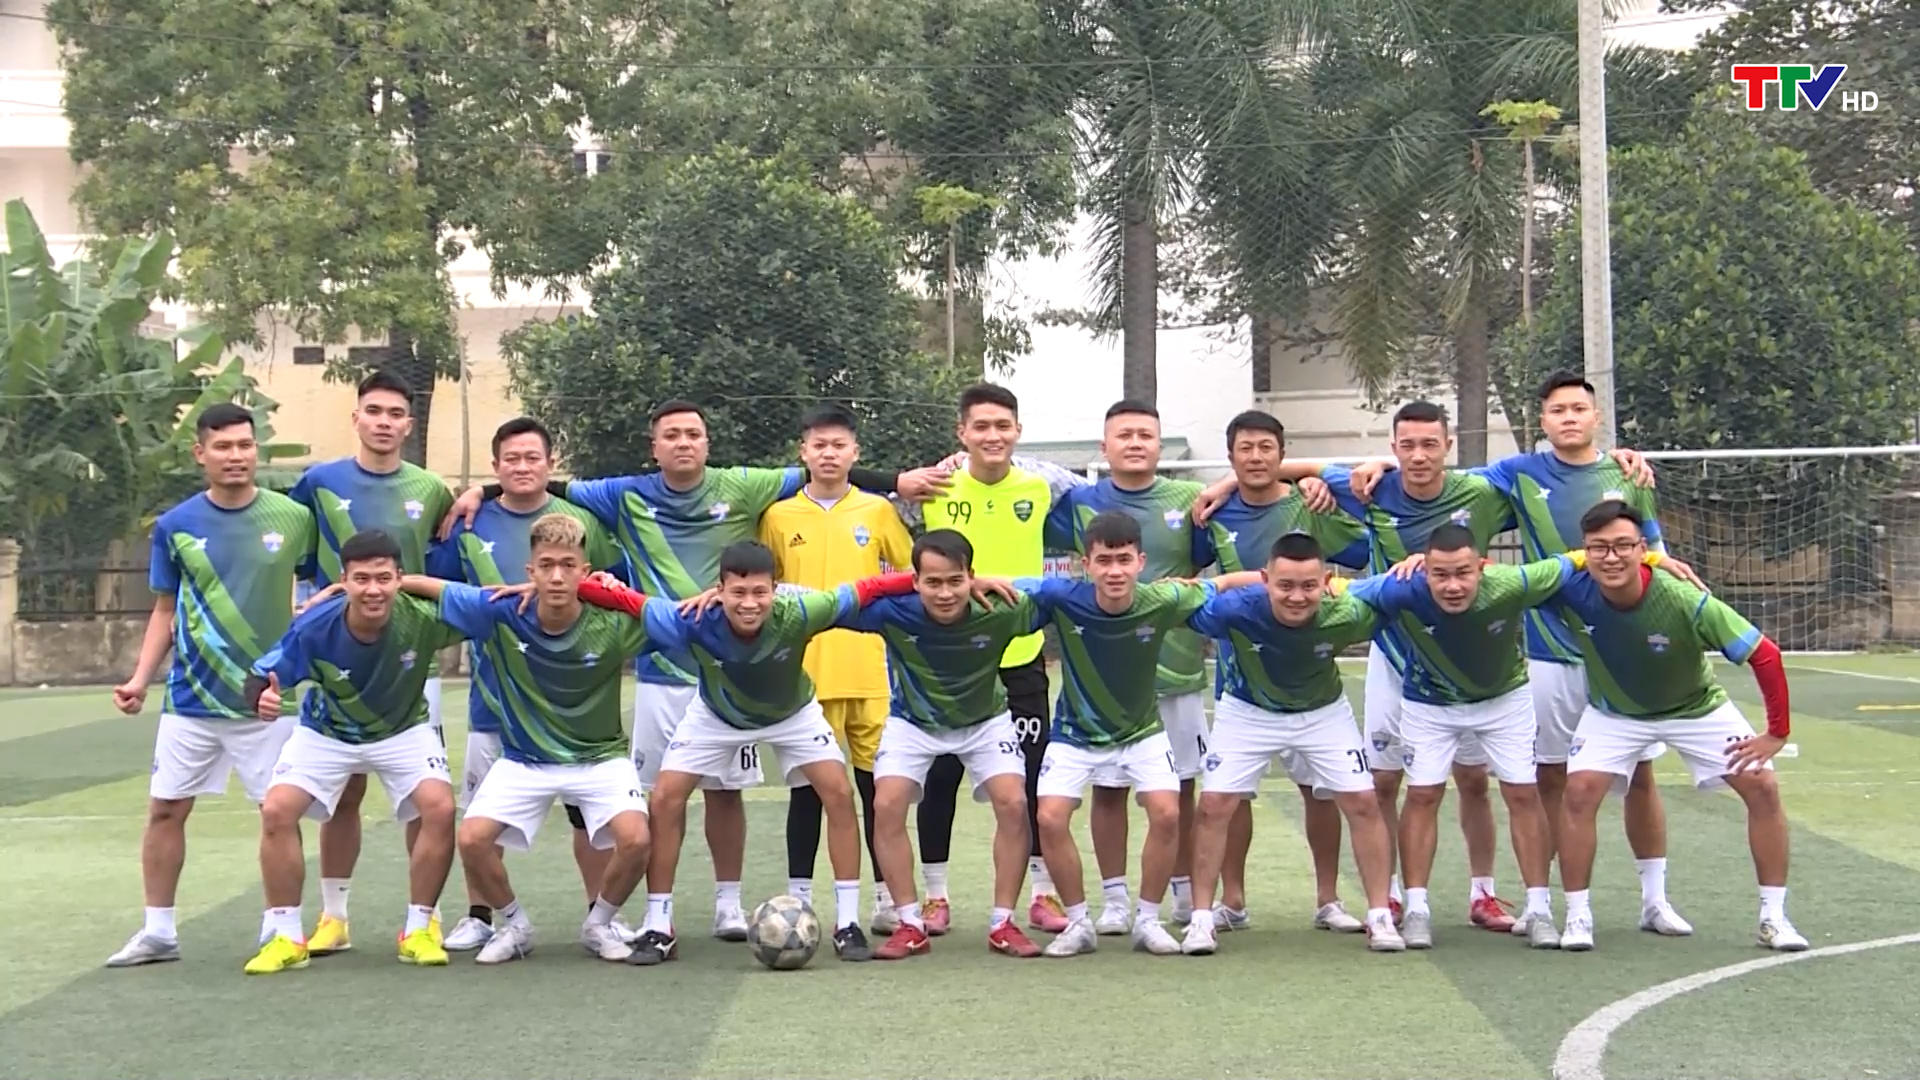 CLB bóng đá Thanh niên Sầm Sơn - mô hình bóng đá tiêu biểu của bóng đá phong trào phố biển - Ảnh 2.